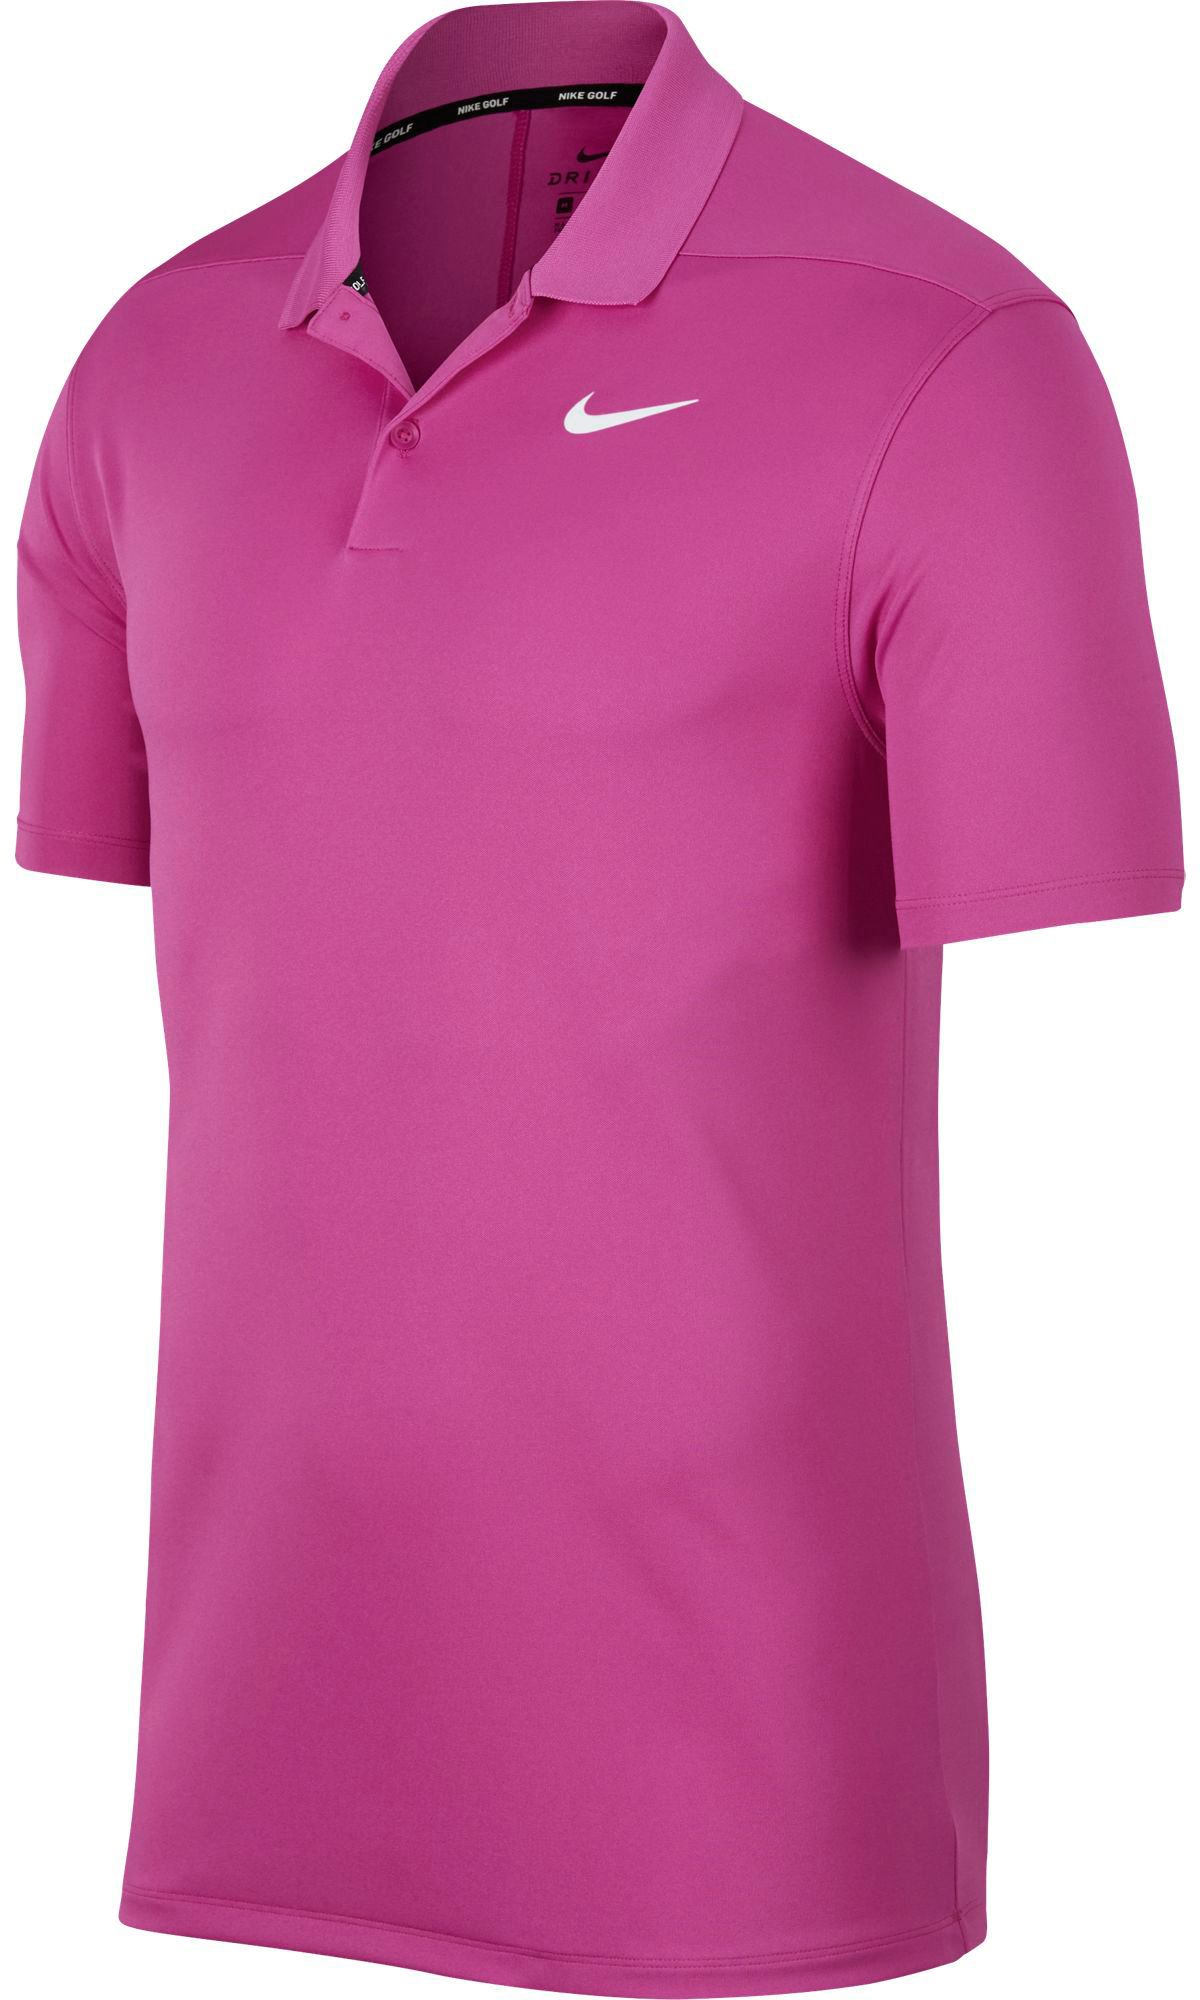 pink nike golf shirt